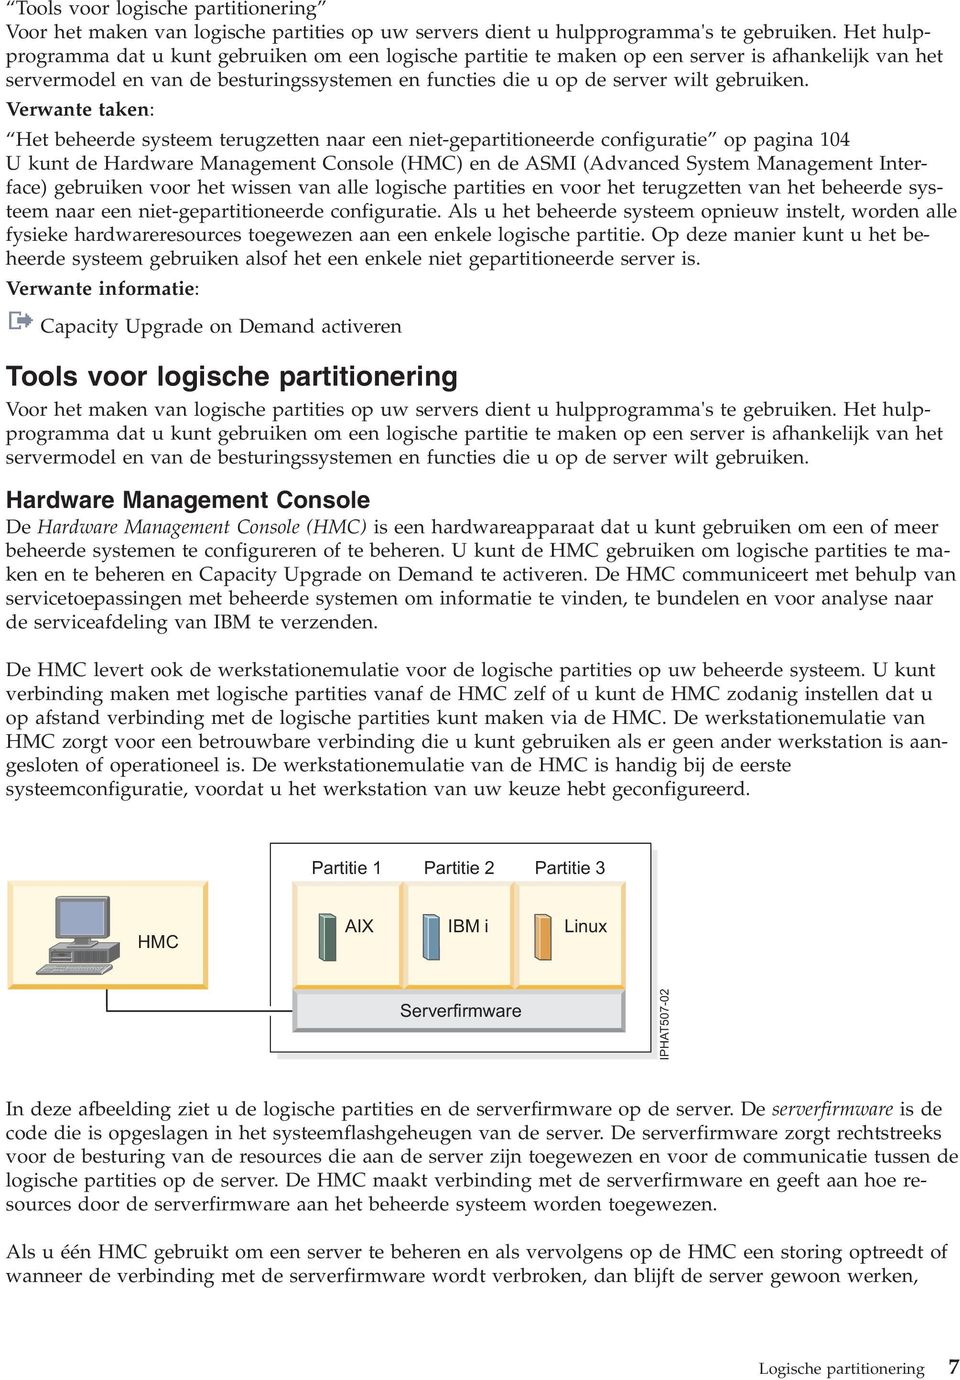 Verwante taken: Het beheerde systeem terugzetten naar een niet-gepartitioneerde configuratie op pagina 104 U kunt de Hardware Management Console (HMC) en de ASMI (Advanced System Management